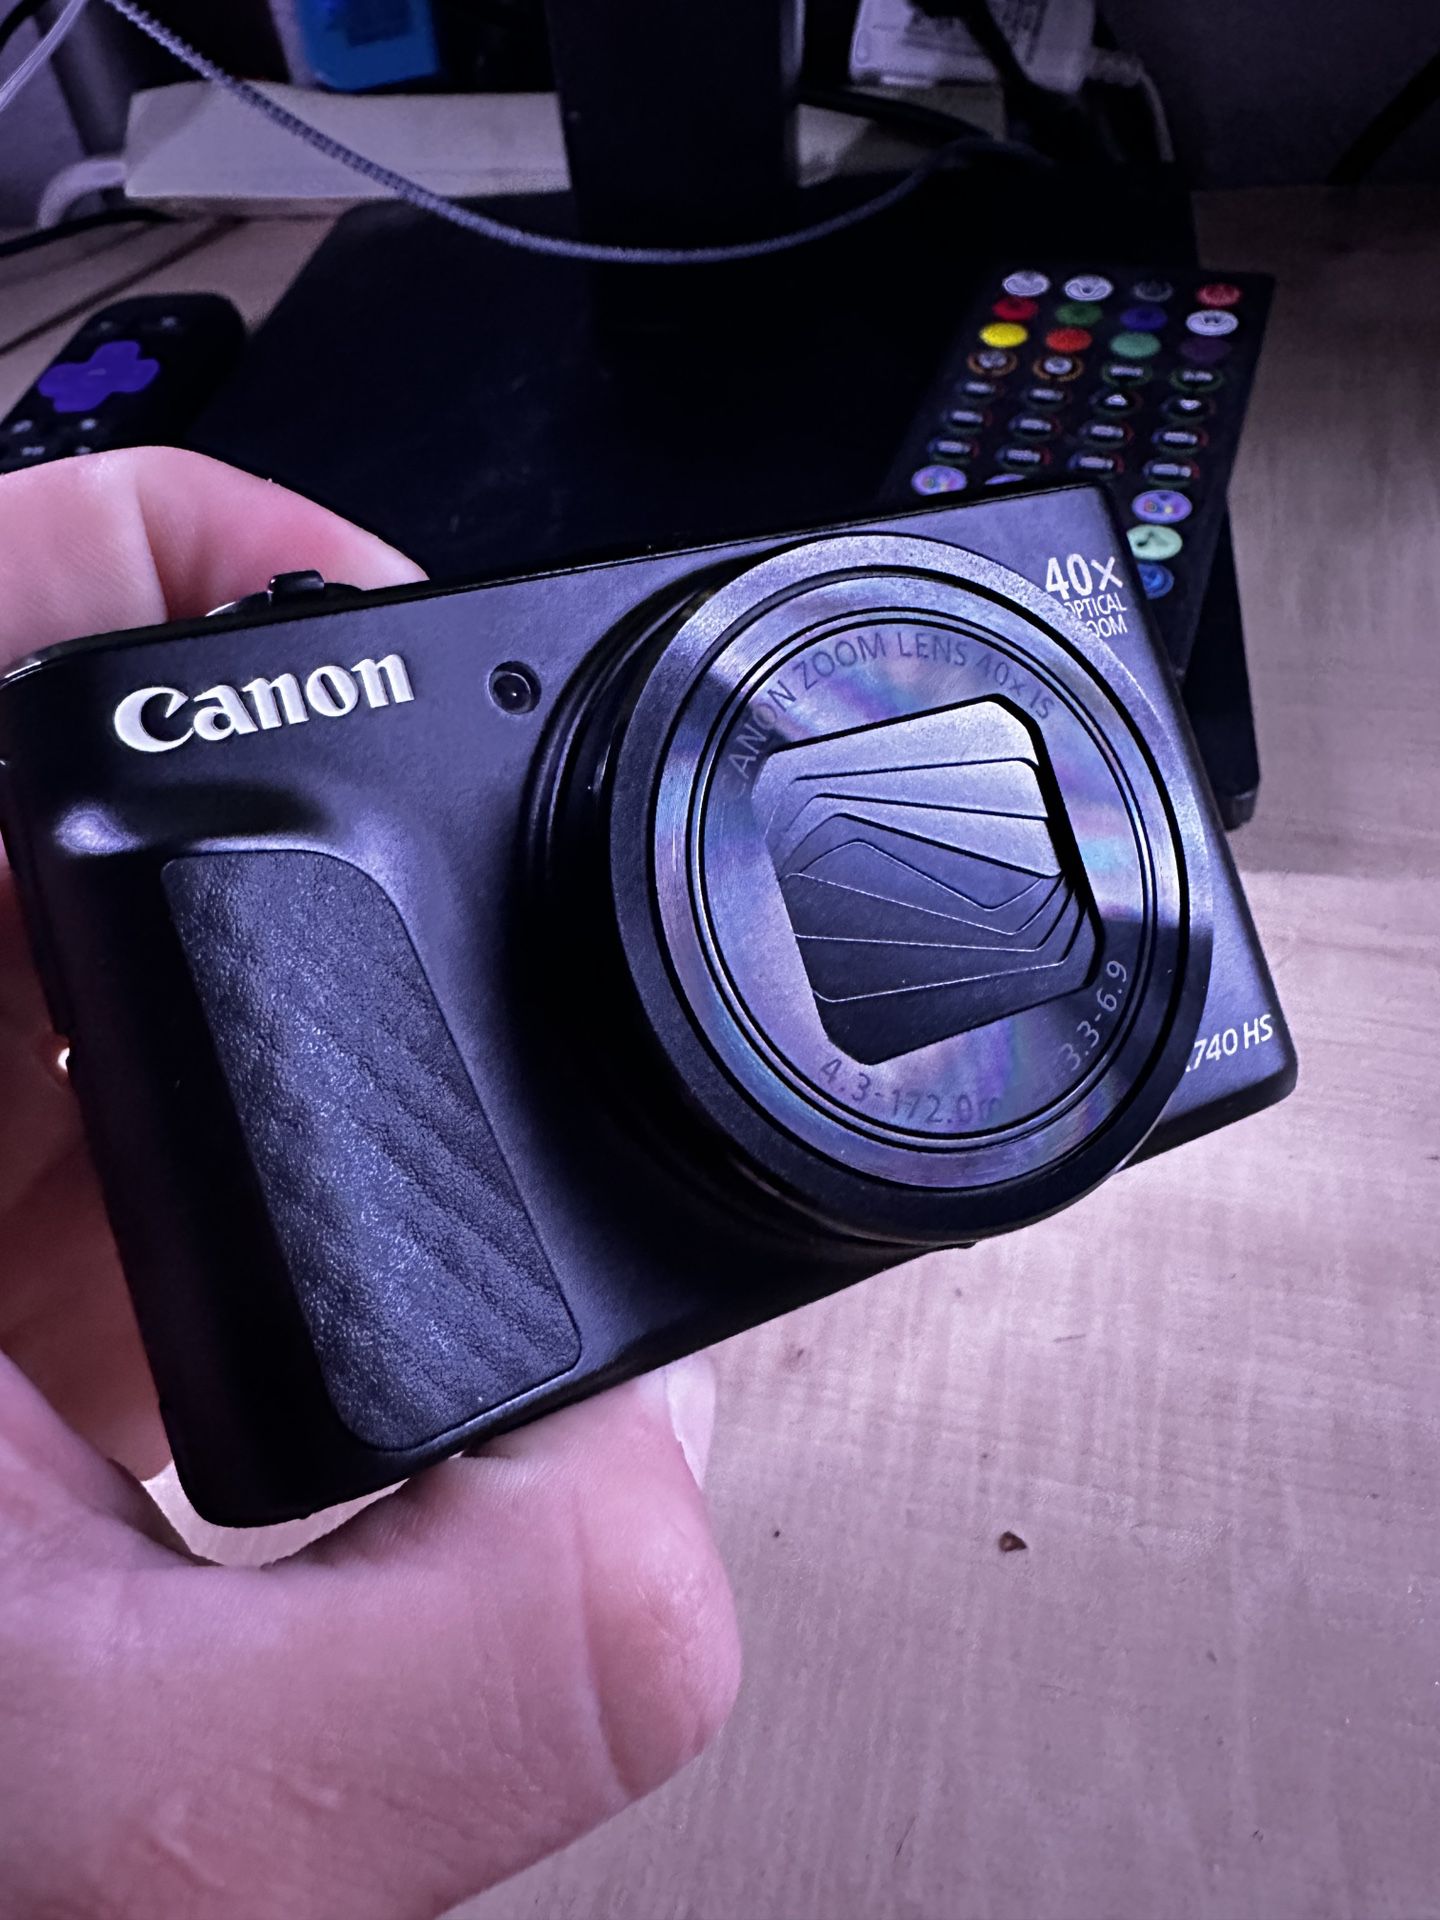 Canon SX 740 HS